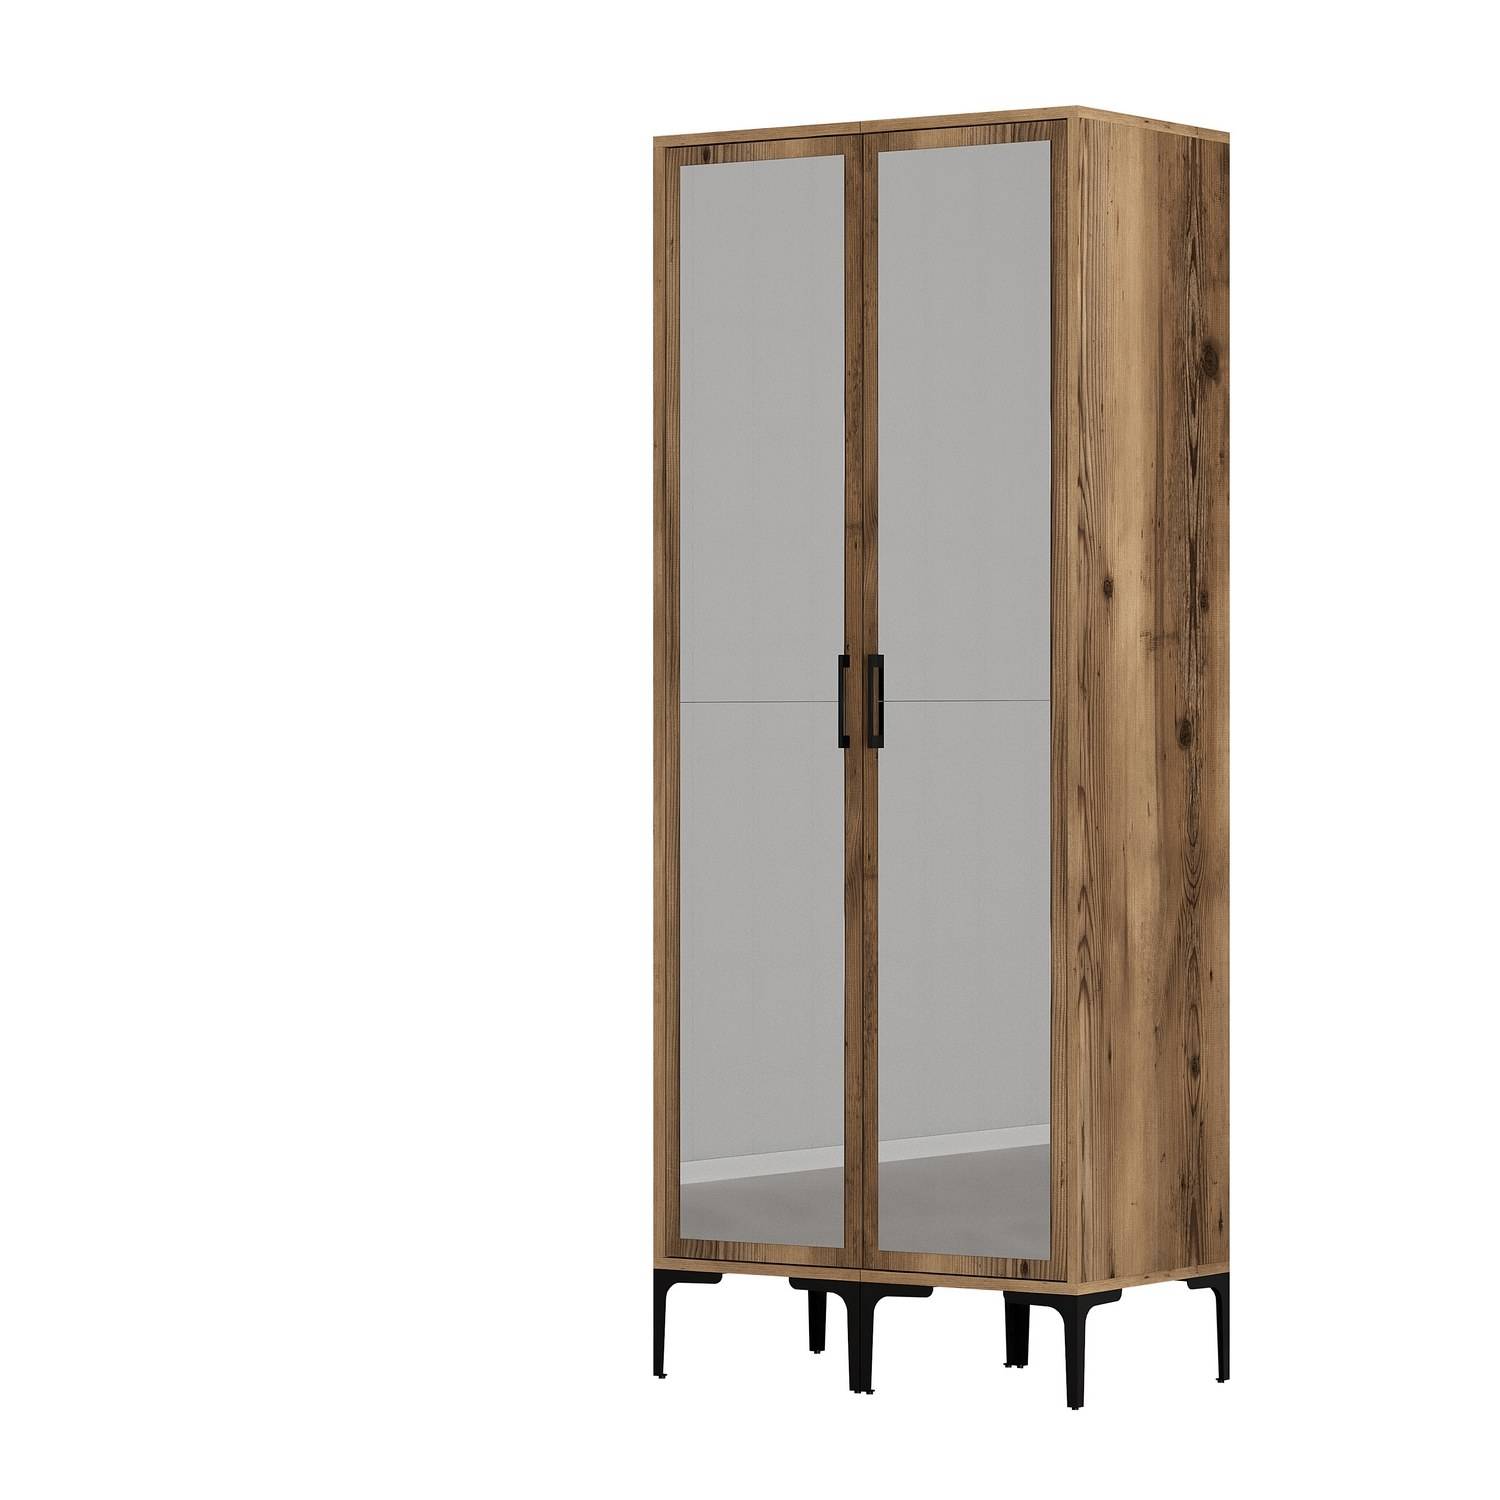 2-deurs kledingkast met spiegel in industriële stijl Akoy L80cm Donker hout